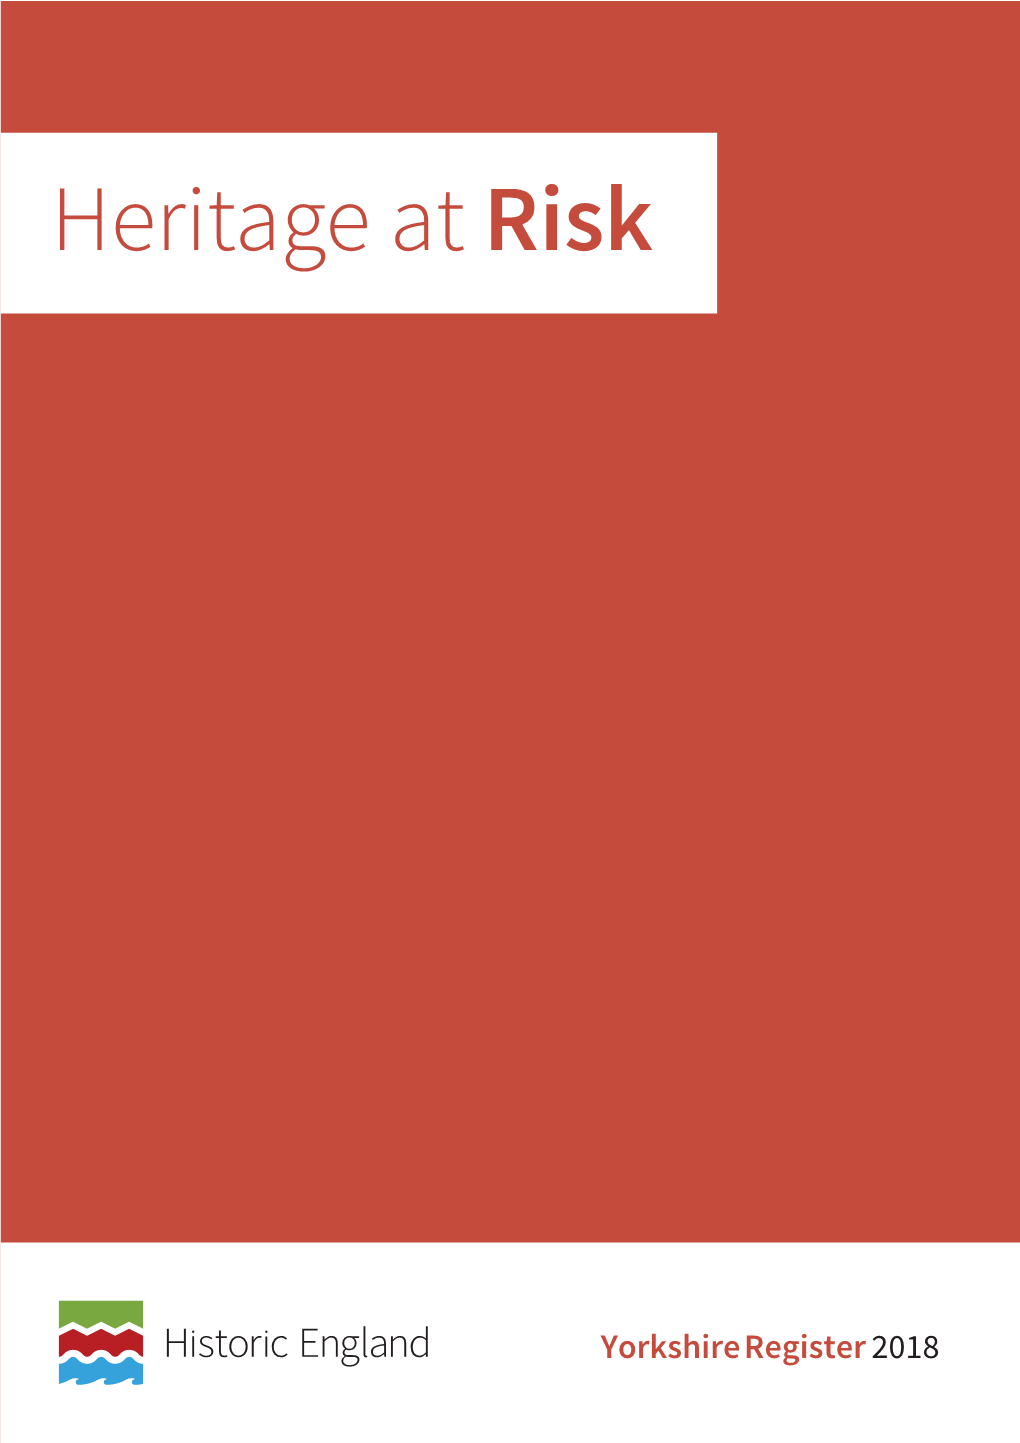 Heritage at Risk Register 2018, Yorkshire